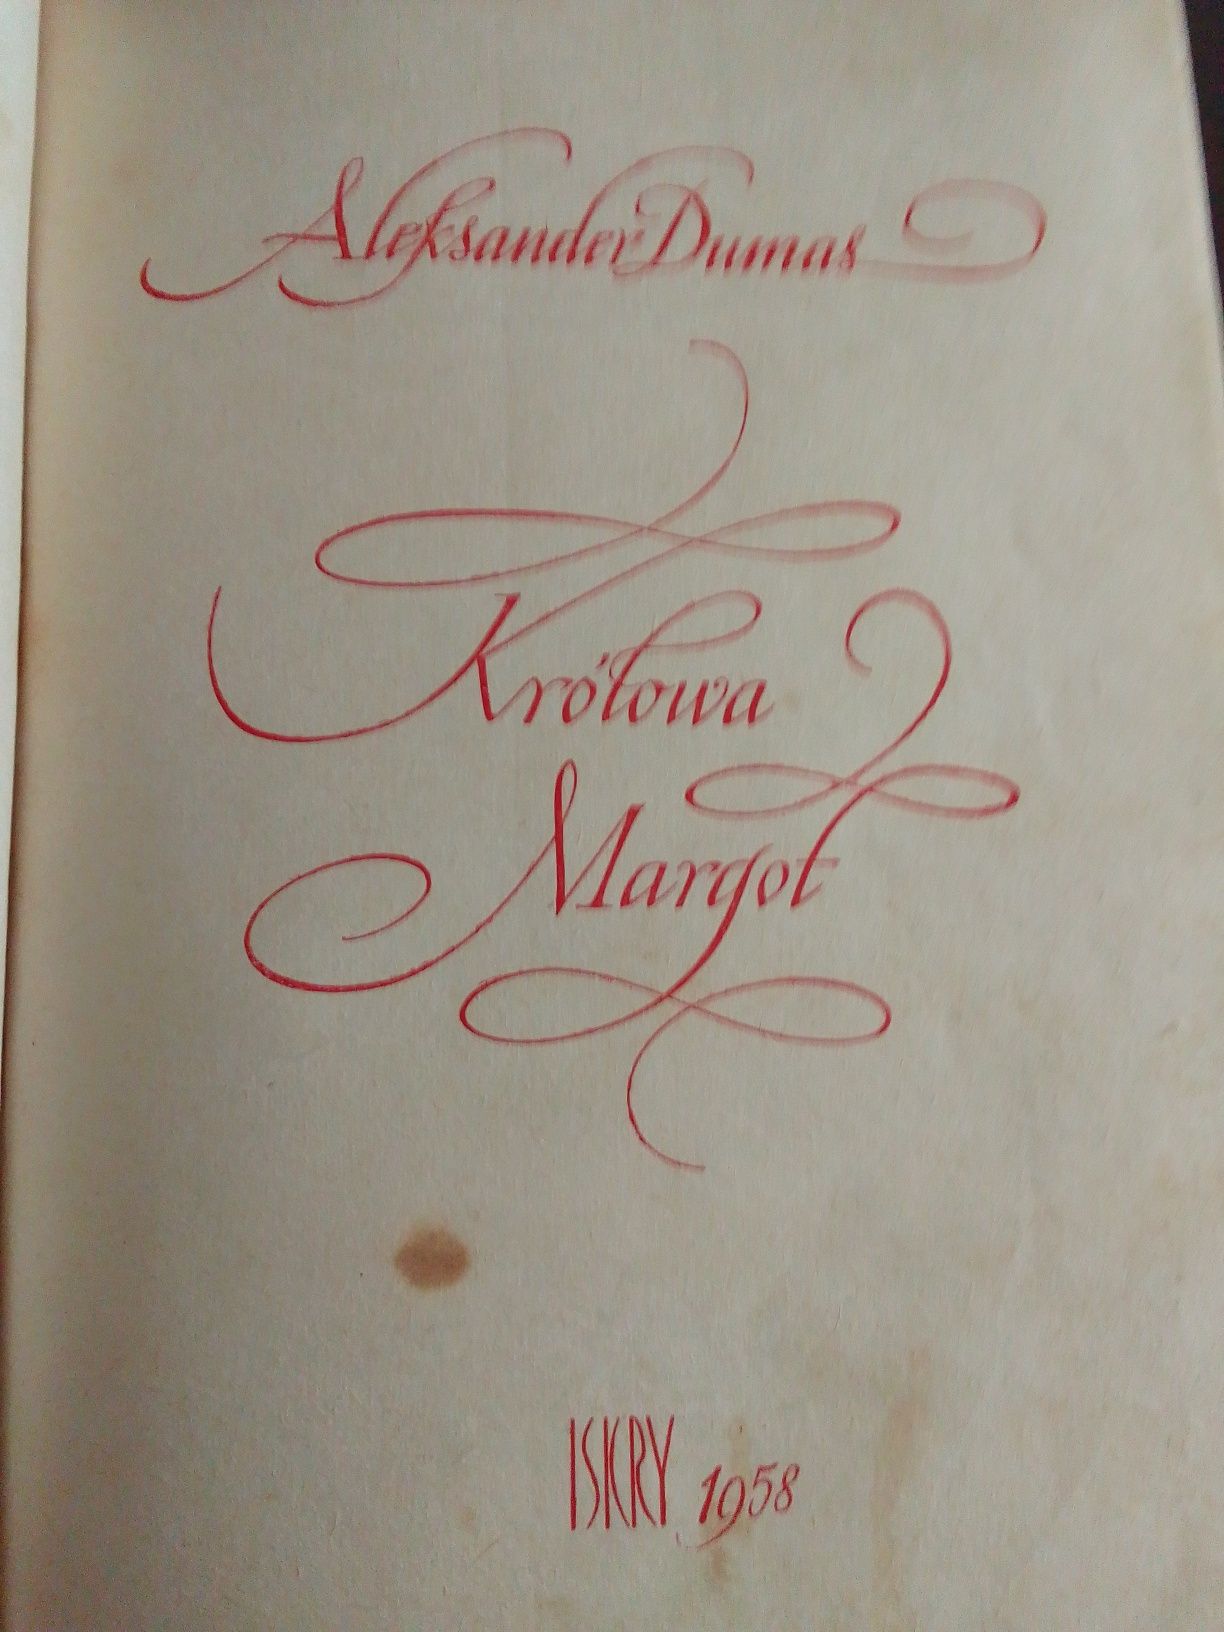 Książka pt. "Królowa Margot" autor A. Dumas